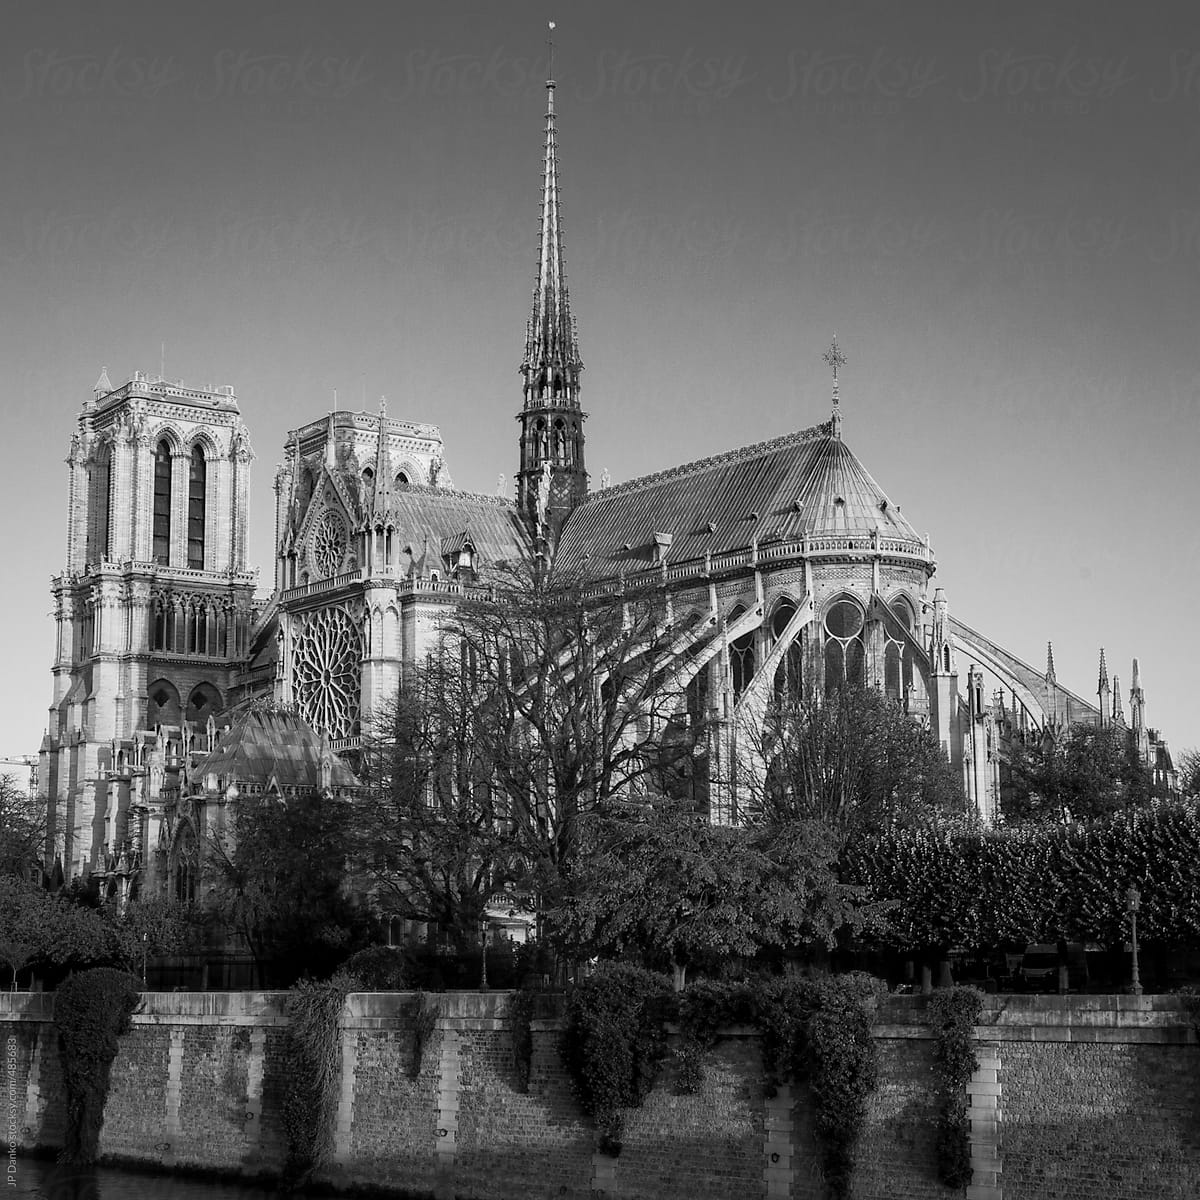 Black and White Vintage Film Medium Format Style Photograph of Notre Dame de Paris